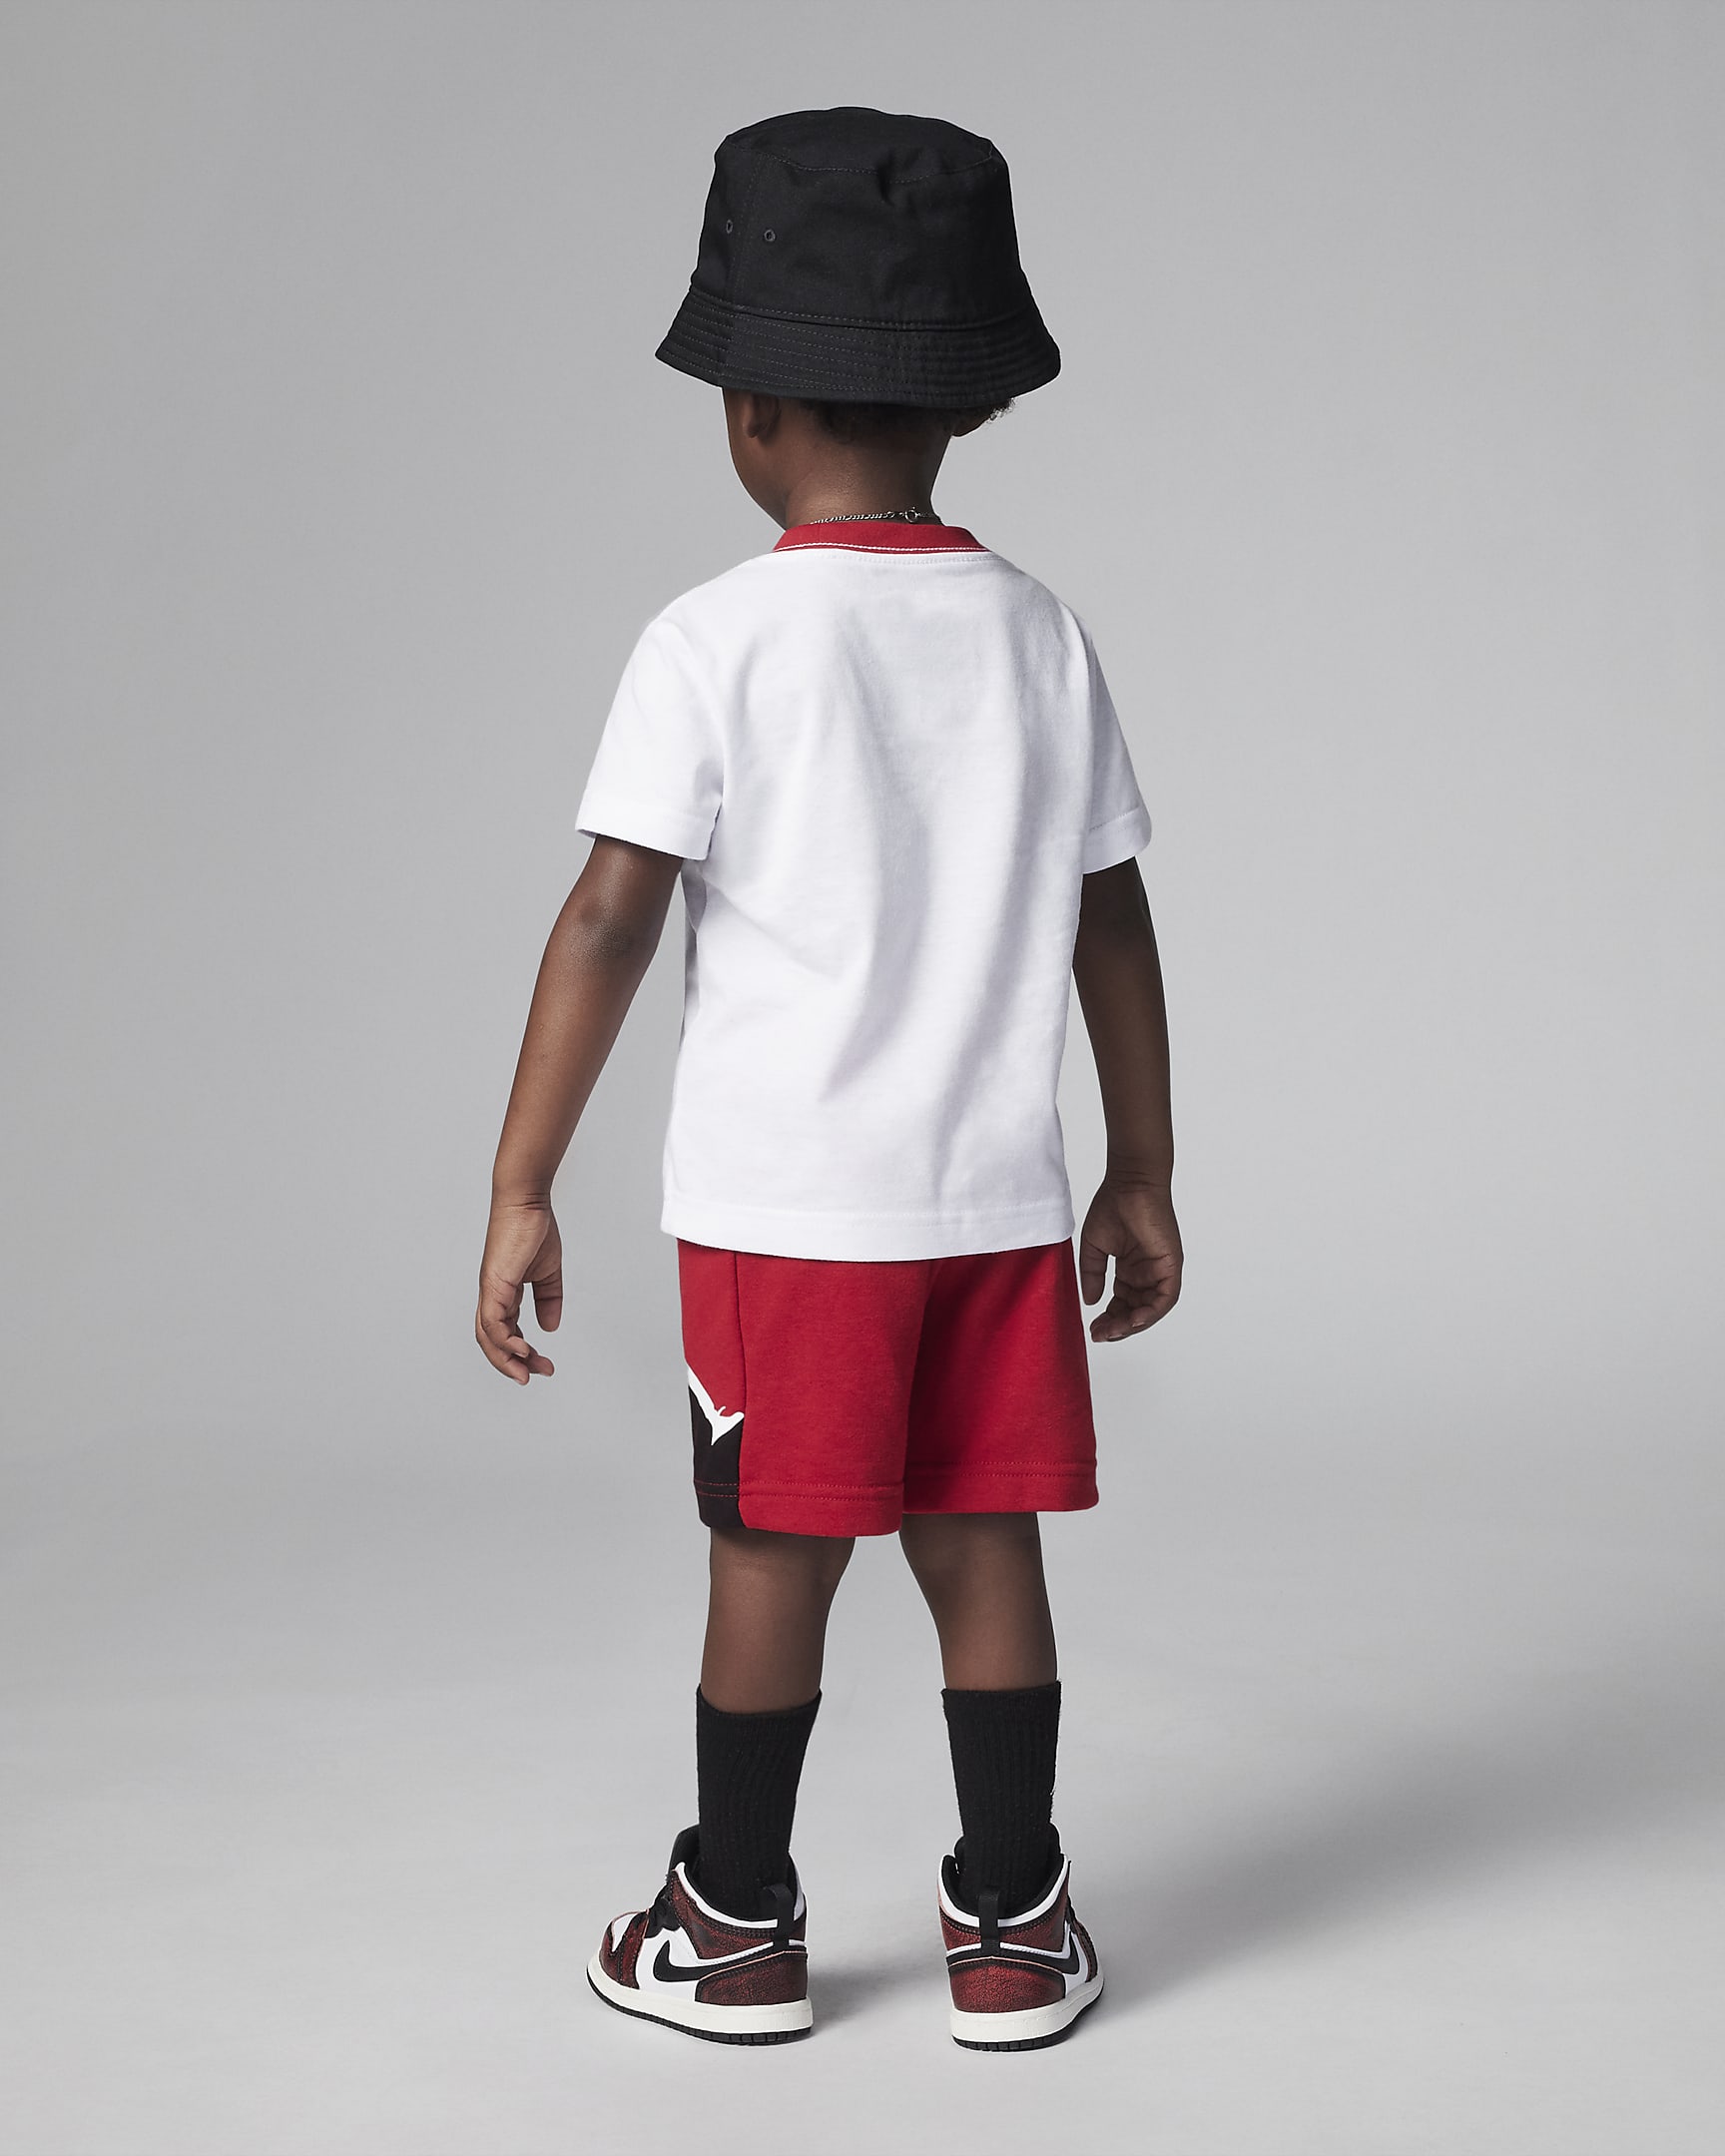 Jordan Jumpman French Terry Shorts Set Toddler Set. Nike FI